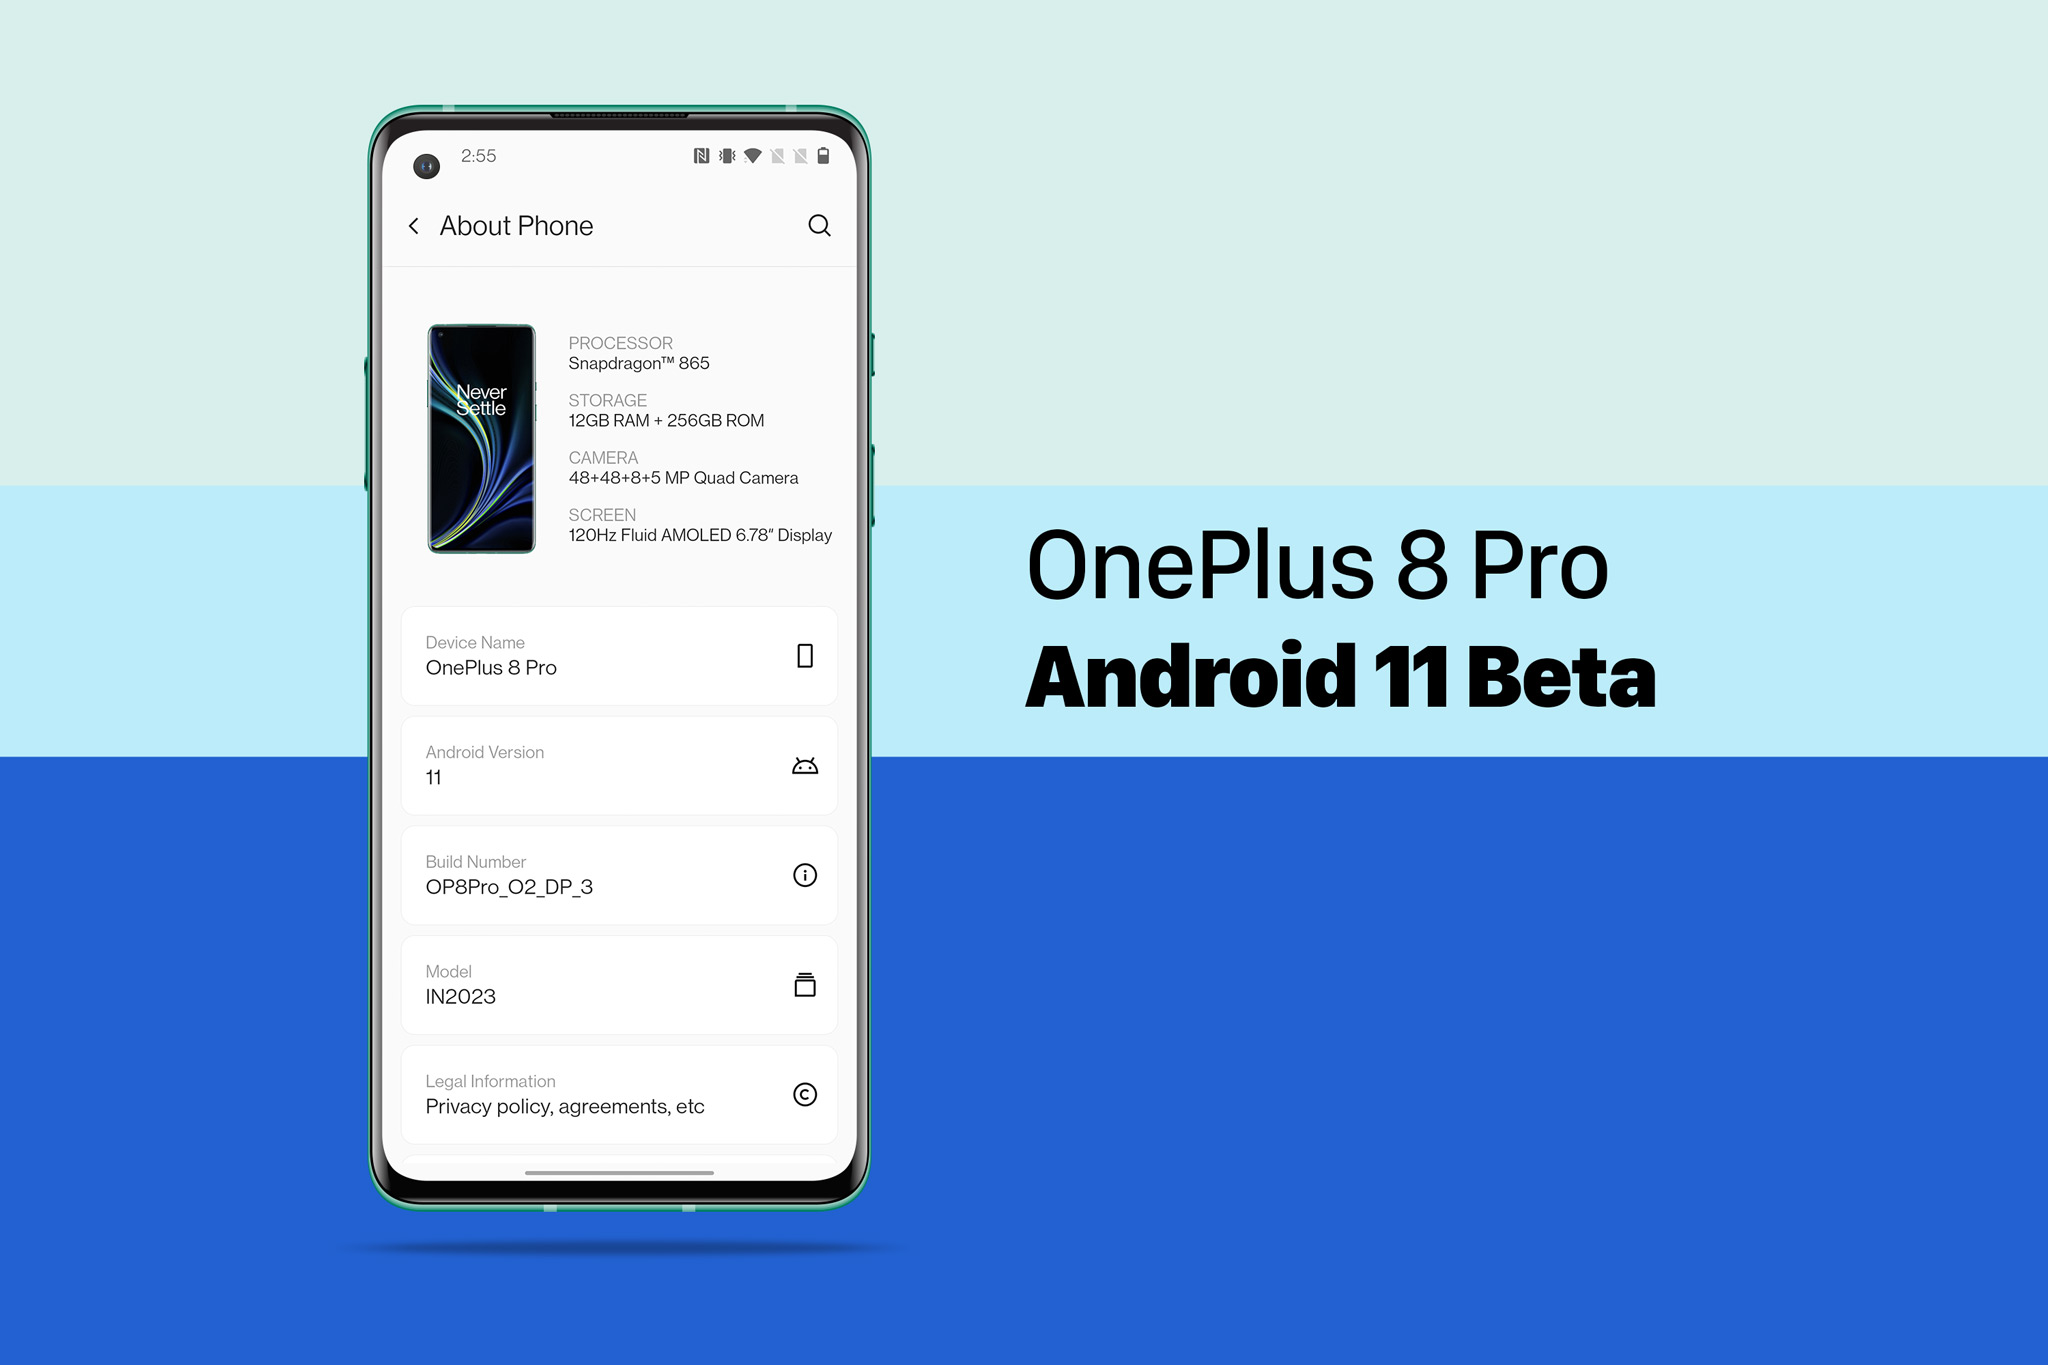 Hướng dẫn cập nhật Android 11 Beta cho Oneplus 8 / 8 Pro: lên nào anh em!